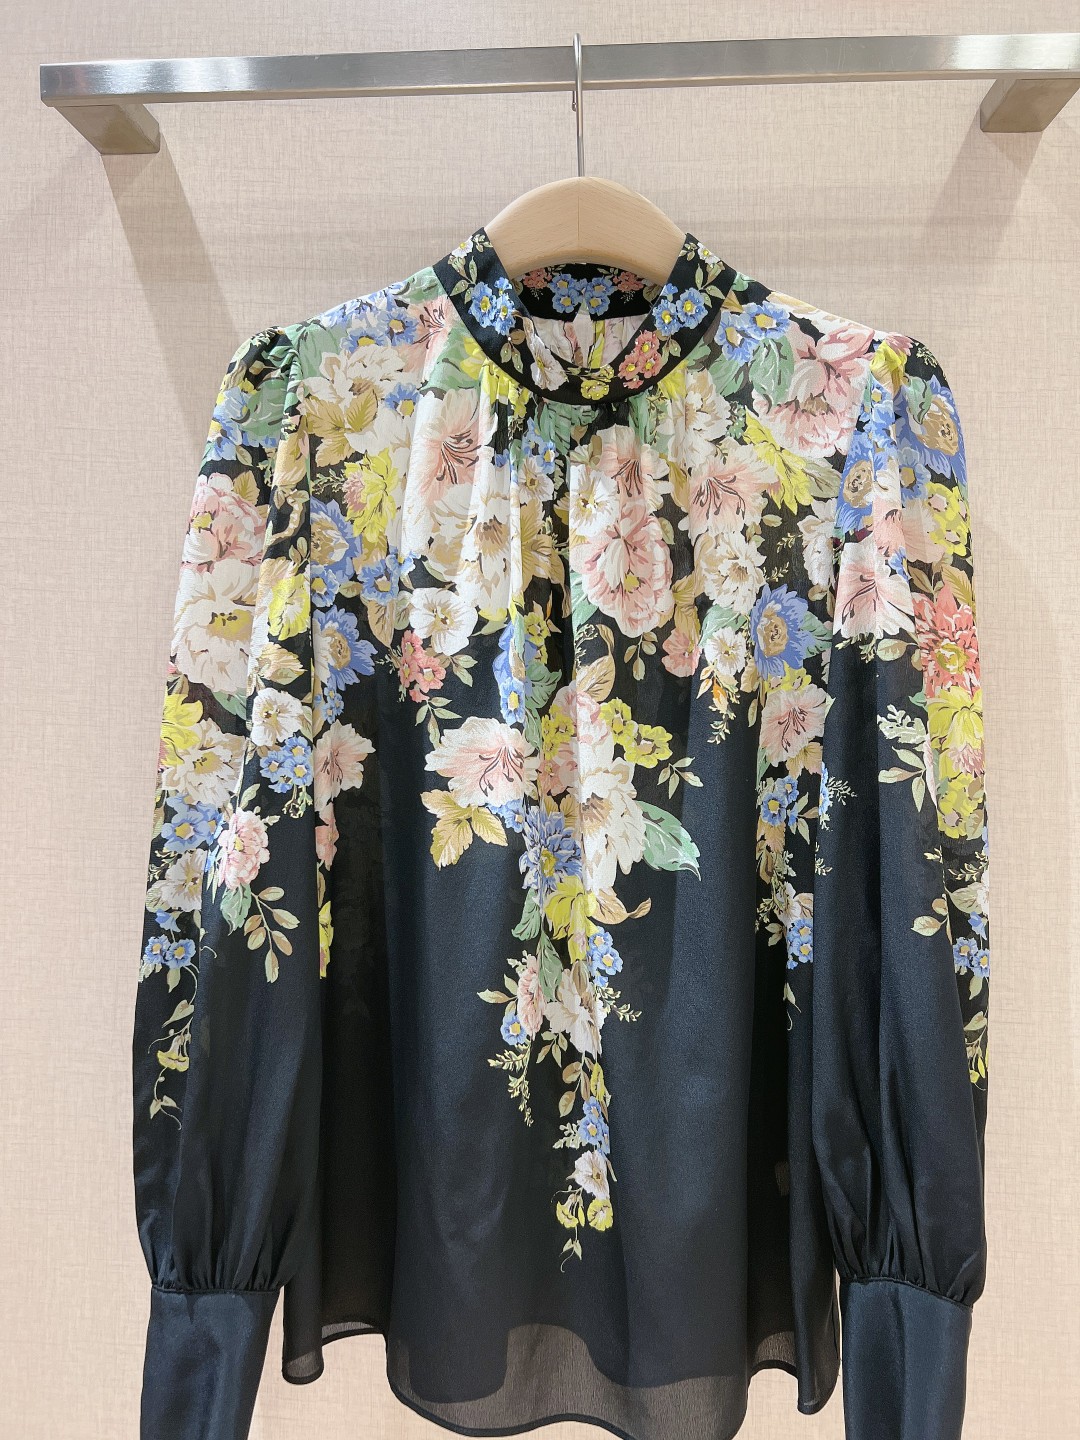 小众立领长袖新款衬衫珊瑚色花卉图案的立领长袖衬衫选用silk100%面料制成经典的衬衫廓形剪裁直袖设计+